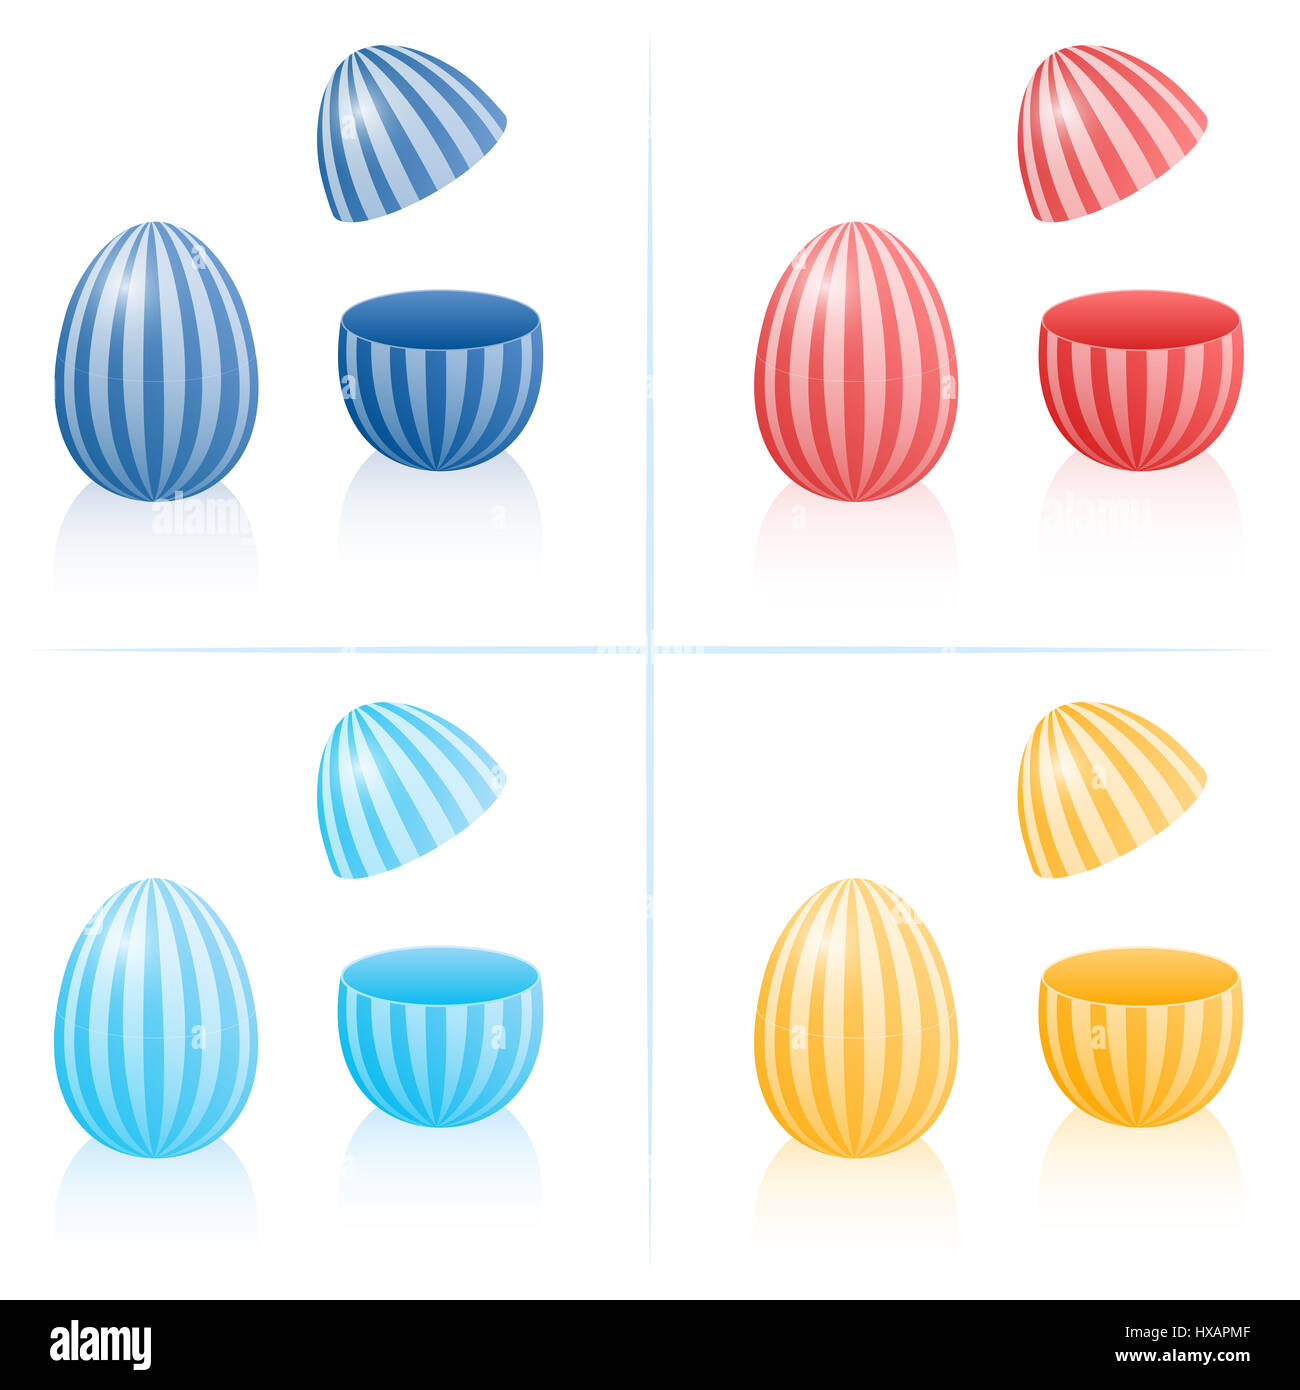 Uovo di Pasqua scatole riempibile con strisce, chiuso e aperto per essere riempito - in quattro colori diversi. Tridimensionale illustrazione isolato. Foto Stock